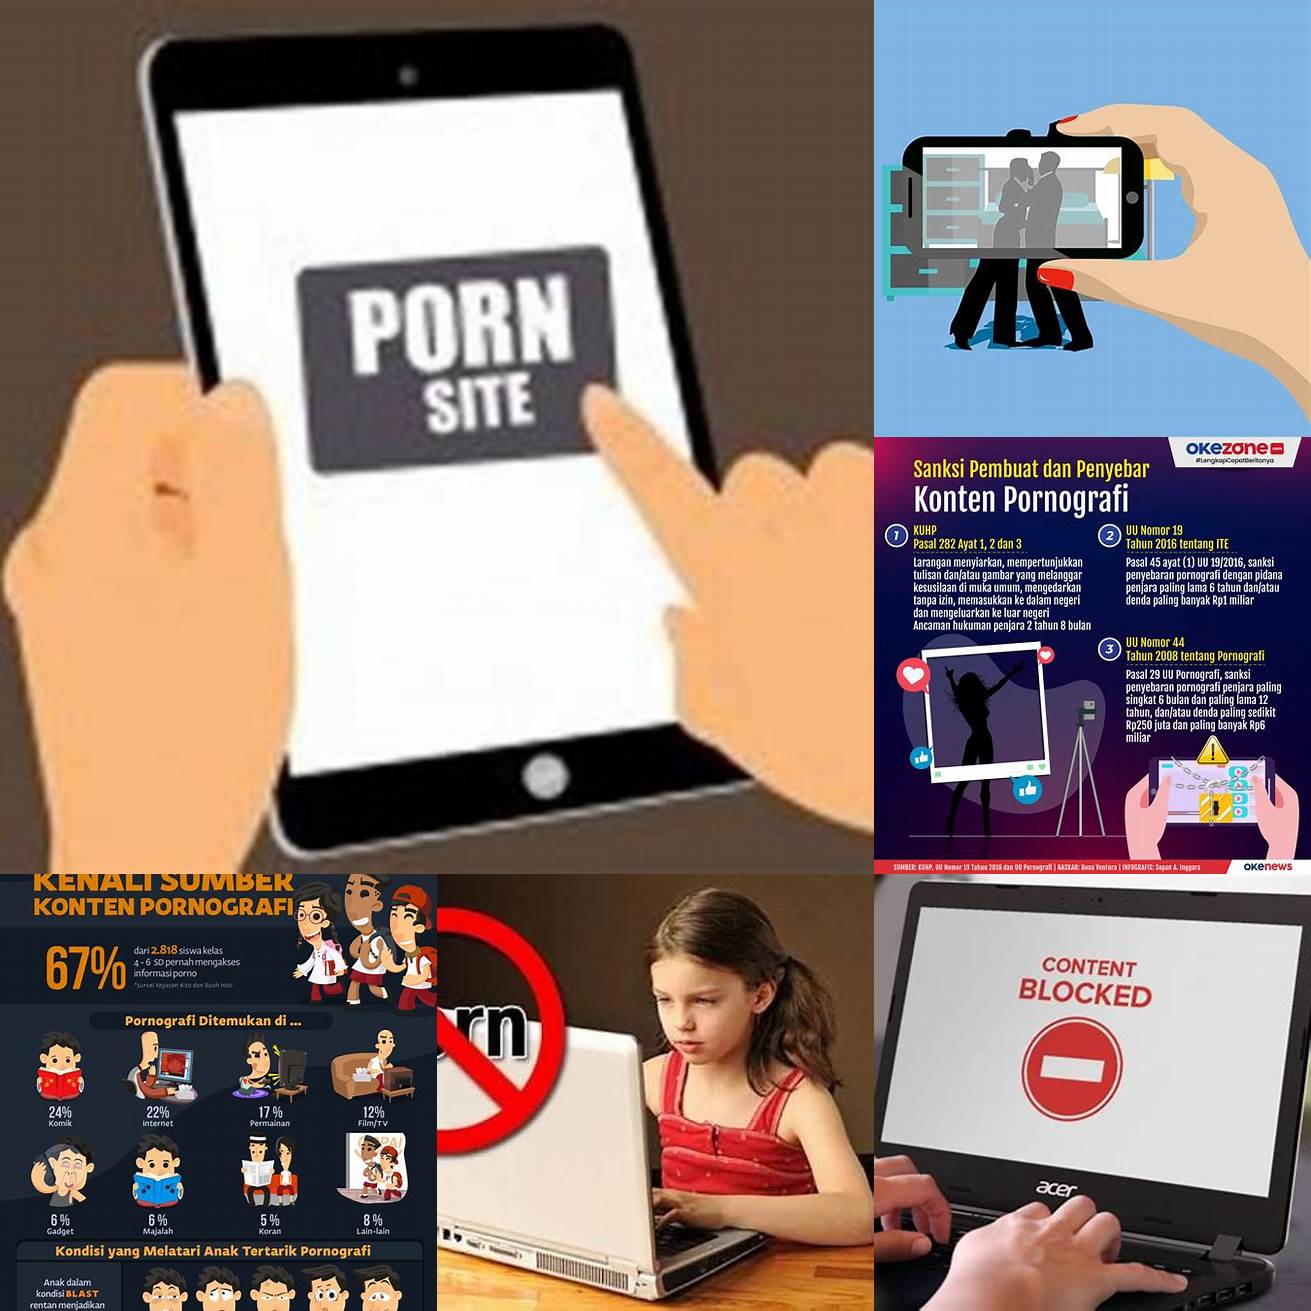 2 Hindari Menyebarluaskan Konten Pornografi